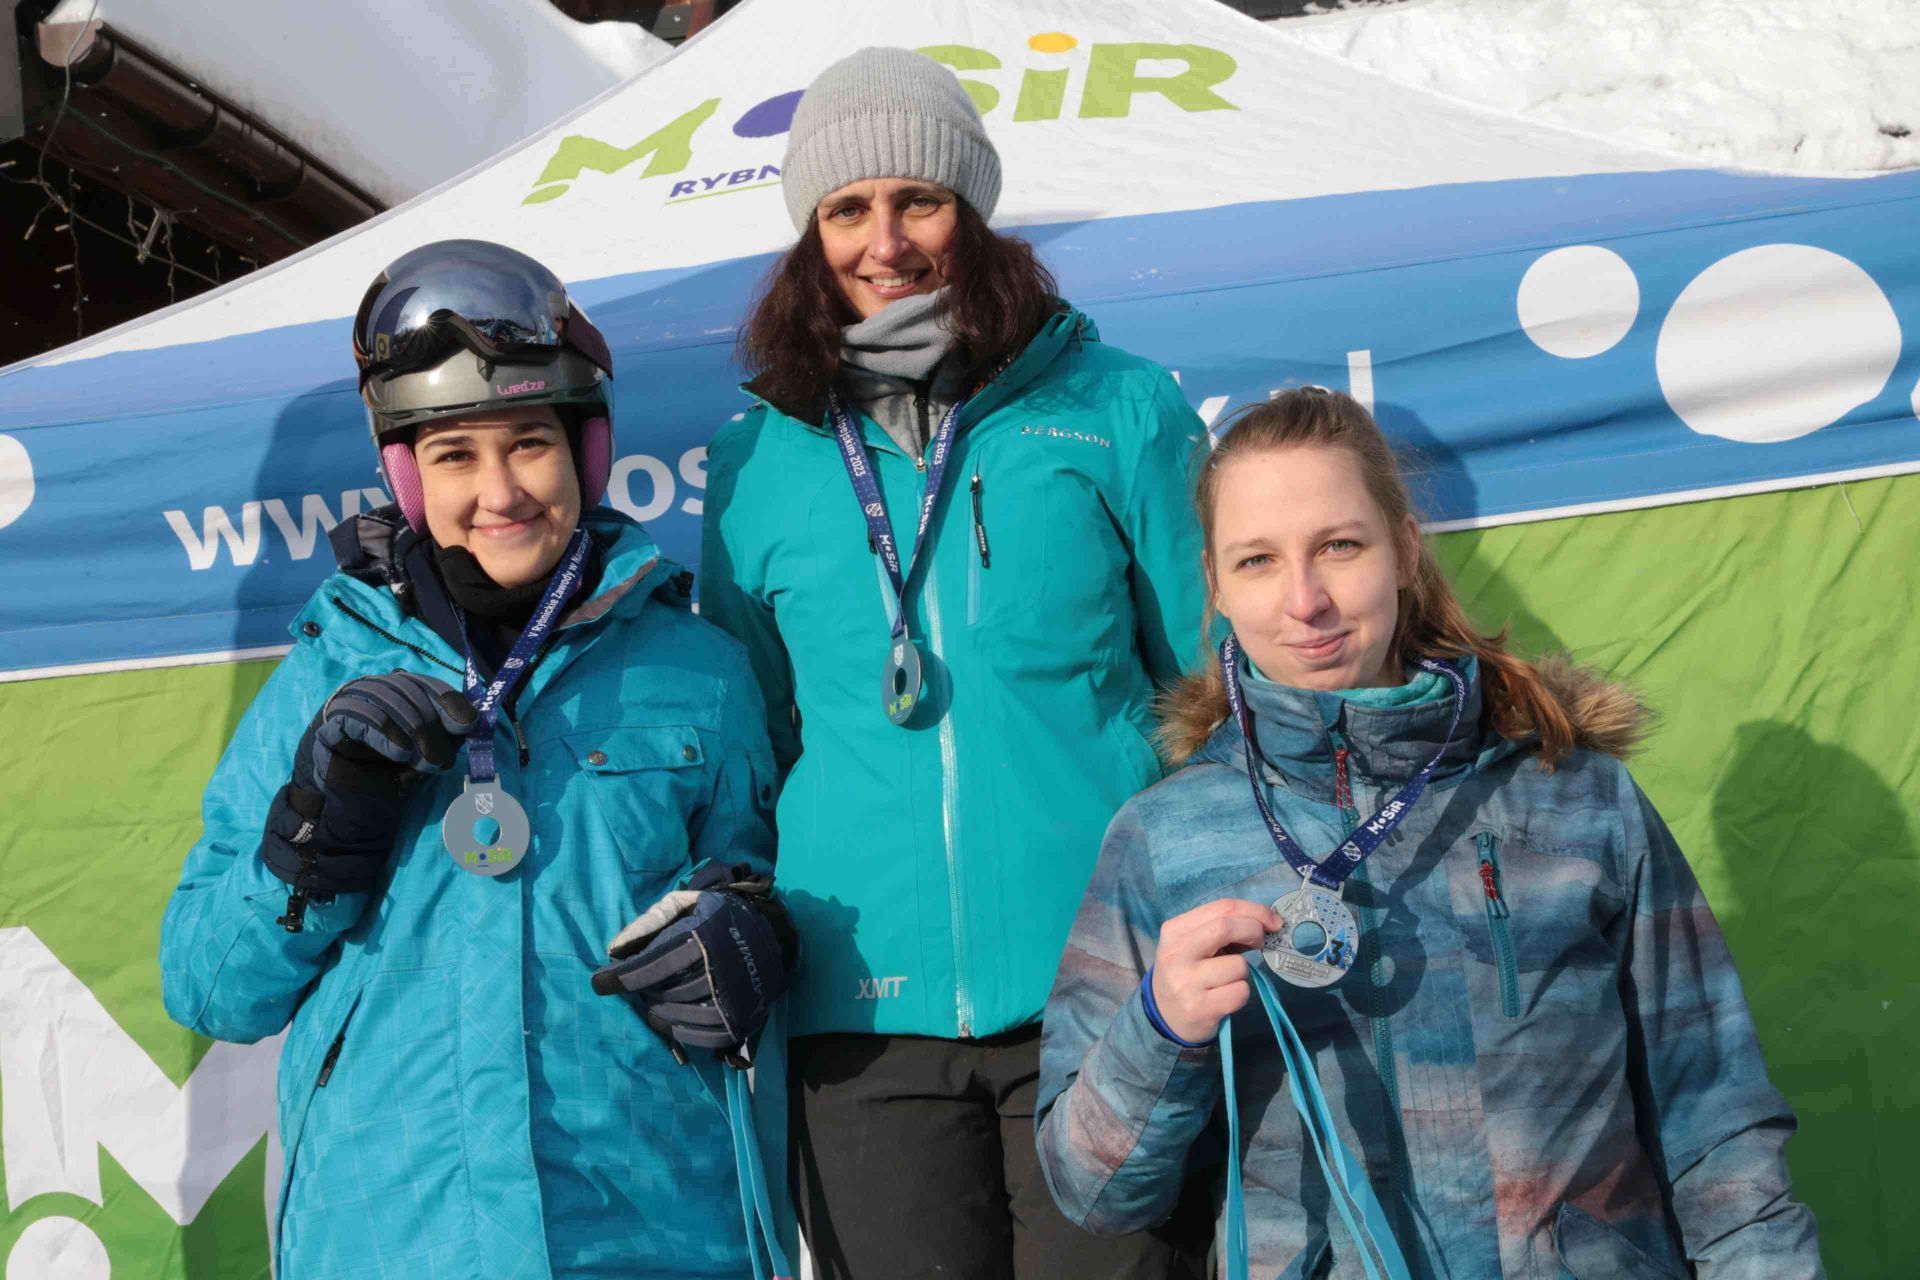 Najlepsze snowboardzistki rybnickich mistrzostw, od lewej Aleksandra Pfeifer, Magdalena Kasprzak i Wioletta Mańka.Zdj. Wacław Troszka